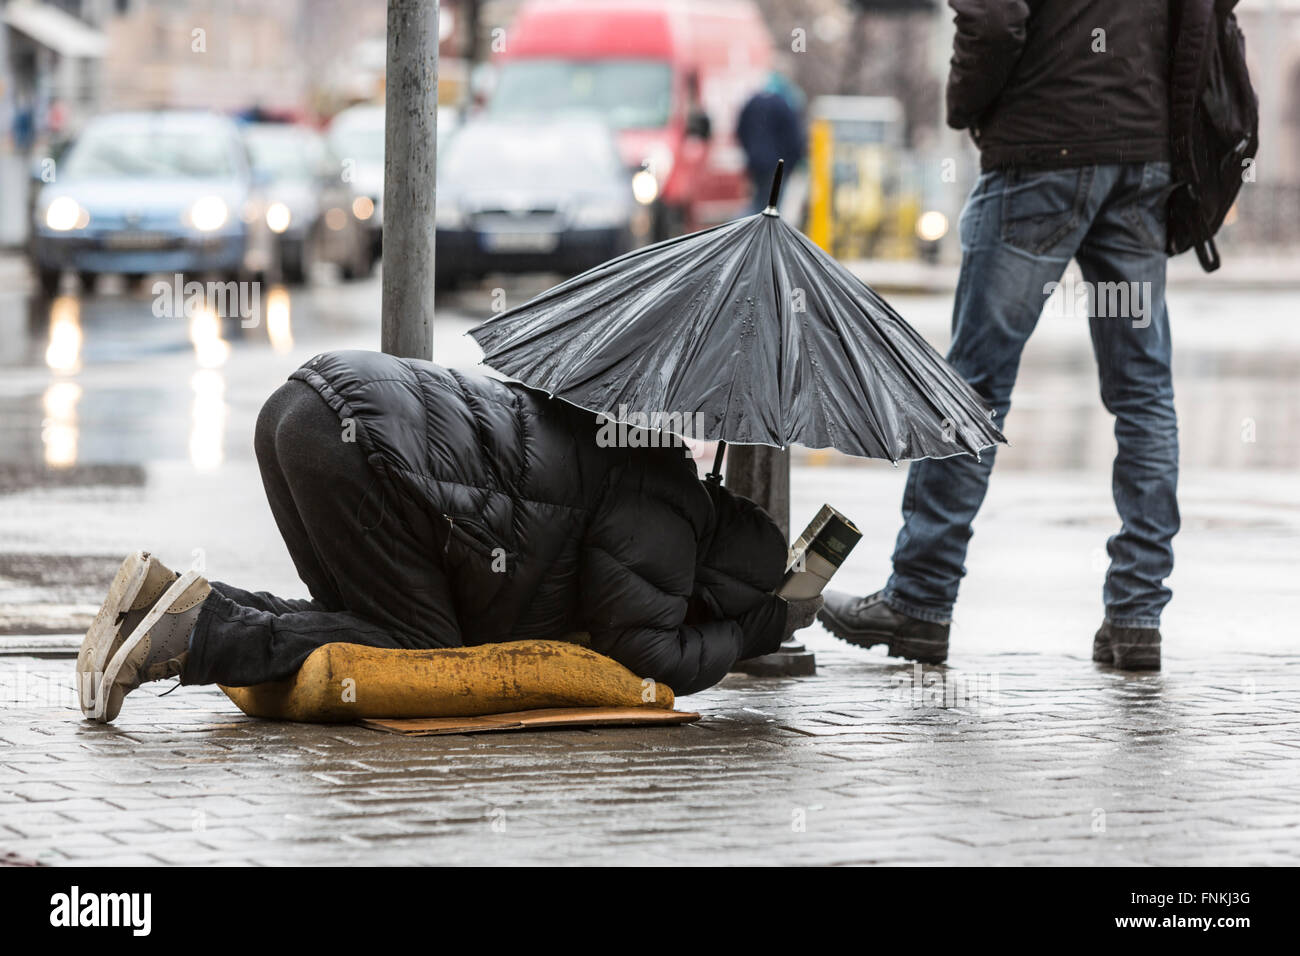 Mit Schirm im Regen in der Nähe von einem Gehweg an einer Hauptstraße in Sofia ist Obdachlose Bettler betteln. Bulgarien ist eines der ärmsten co Stockfoto